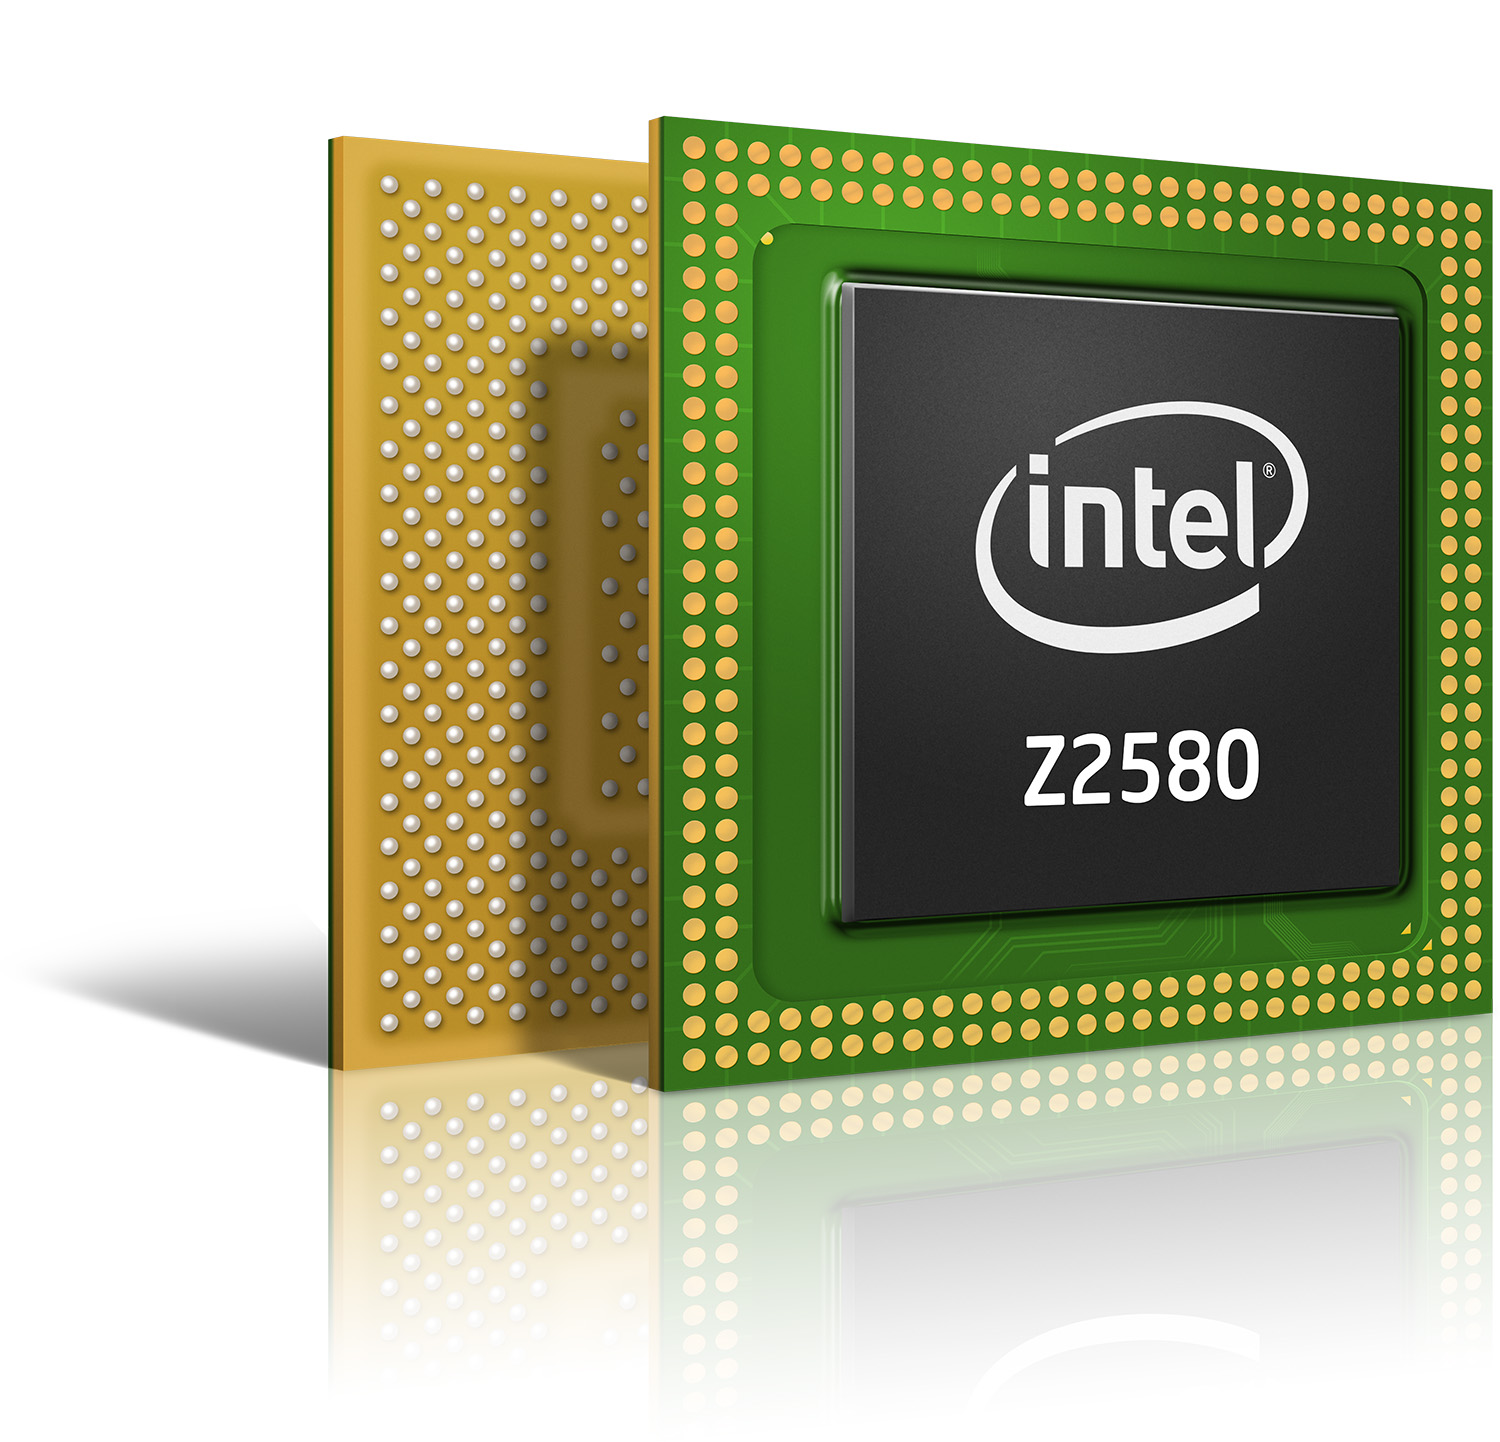 Intel_Atom_Processor_Z2580-angle